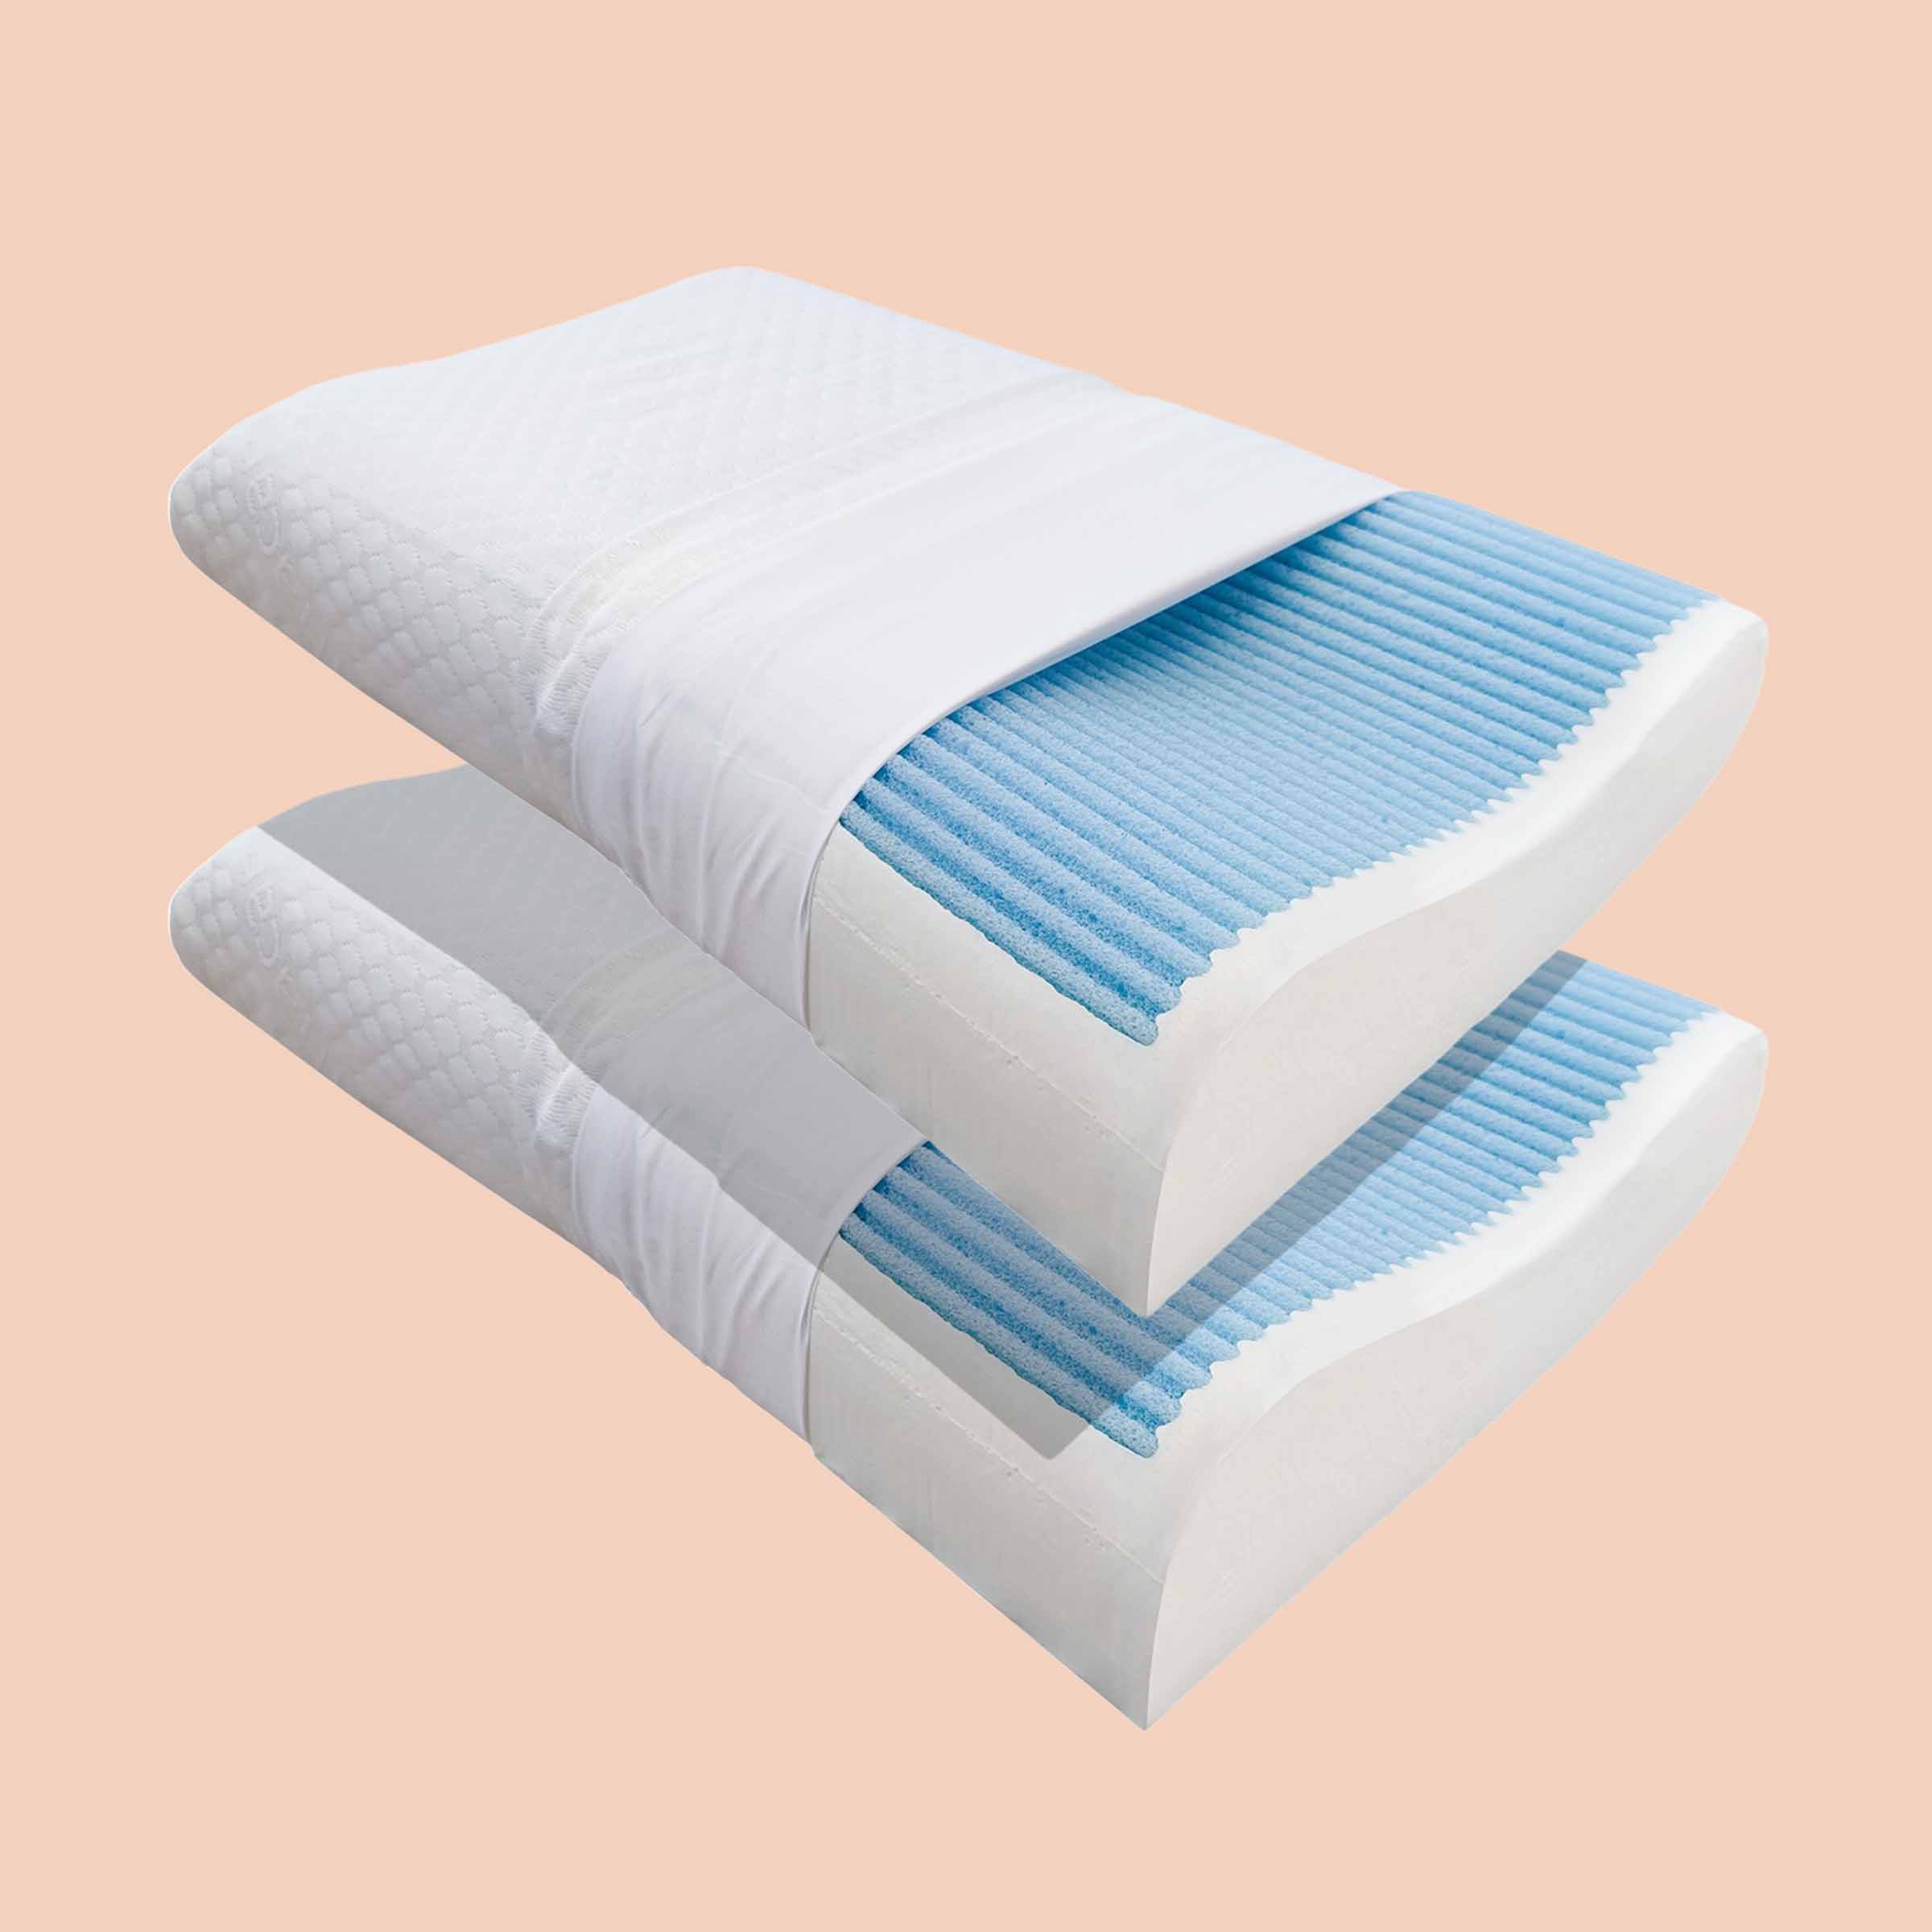 Due cuscini cervicali Lignano di Beliamo in un bundle, progettati per offrire supporto ergonomico e comfort durante il sonno